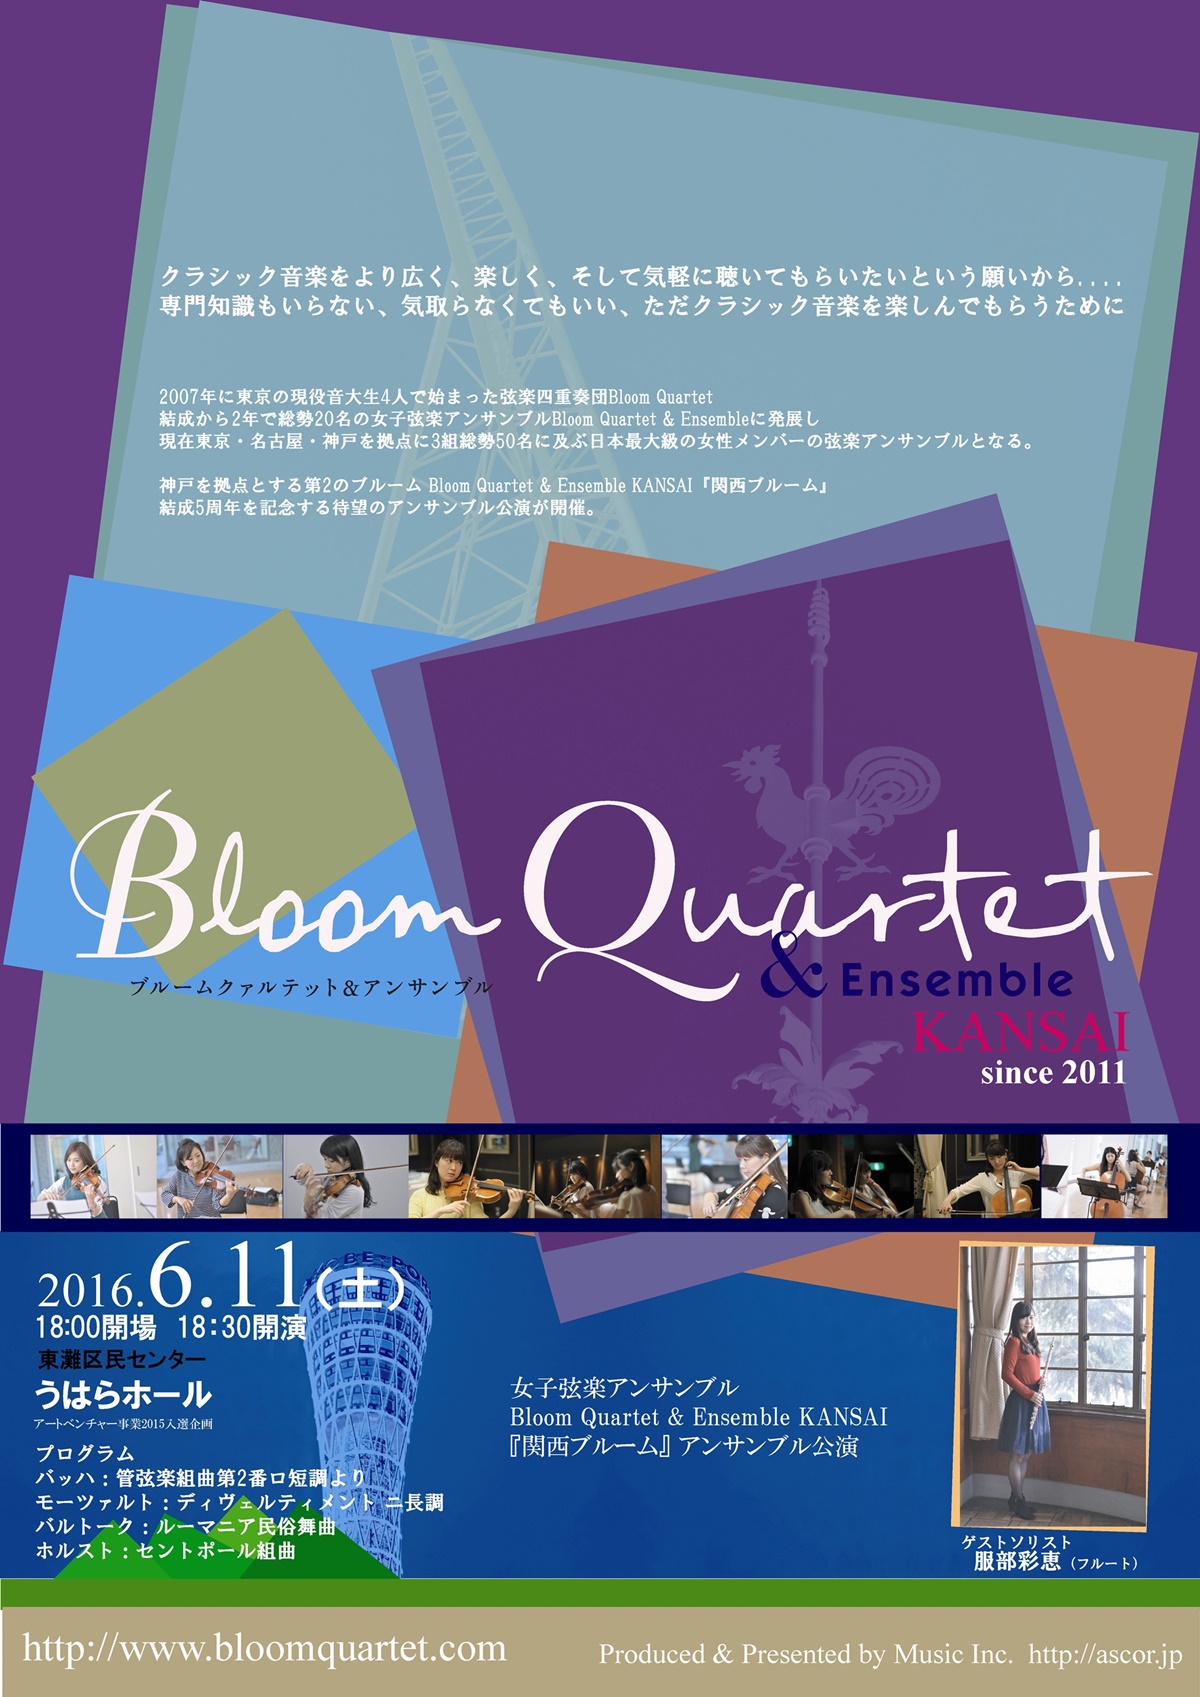 女子弦楽アンサンブルBloom Quartet & Ensemble KANSAI、服部彩恵